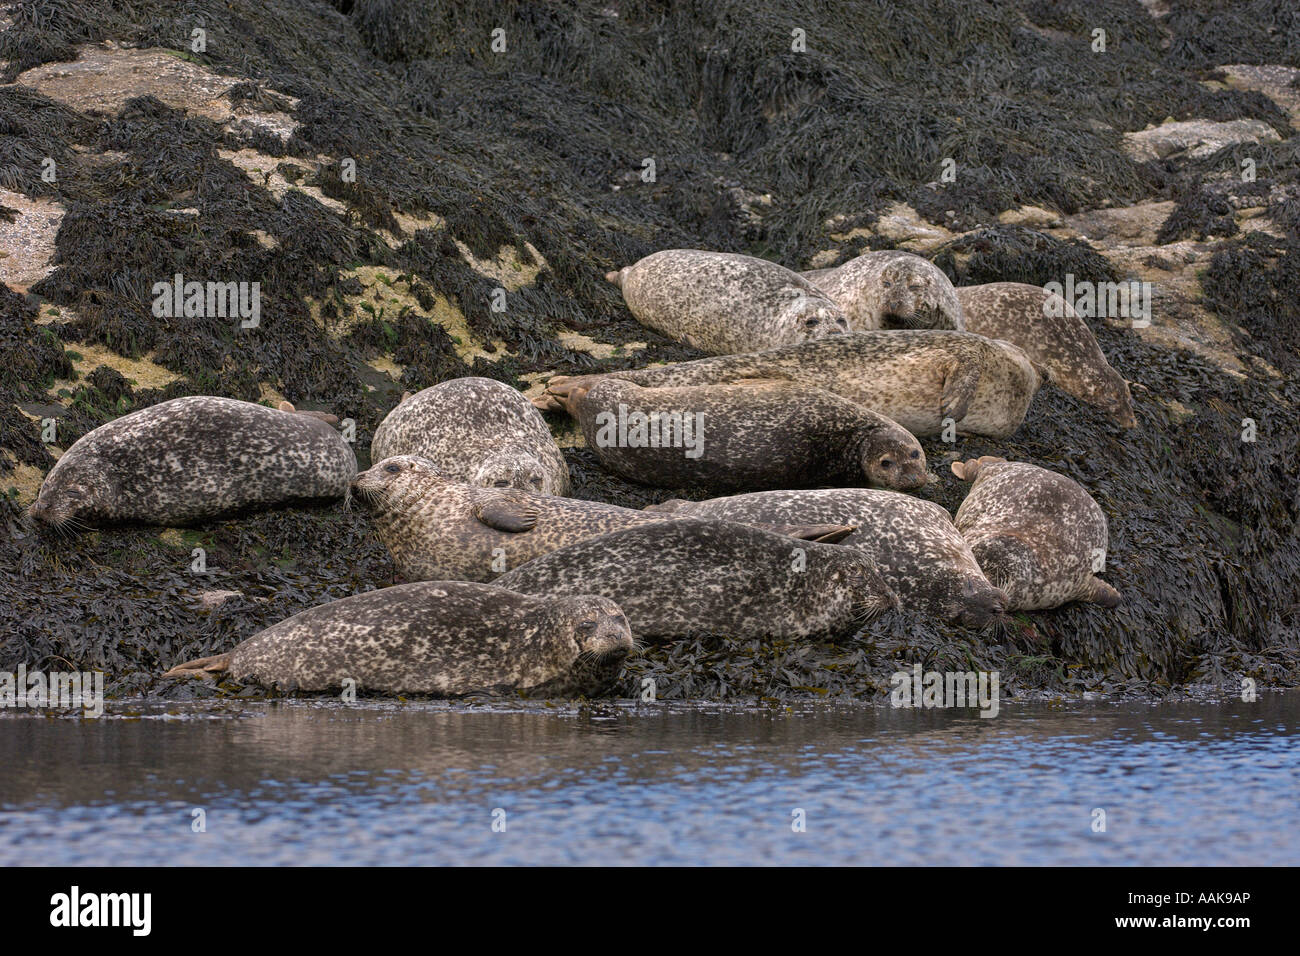 Les phoques communs (Phoca vitulina sur îlot rocheux à l'île de Skye Ecosse Juin 2007 Banque D'Images